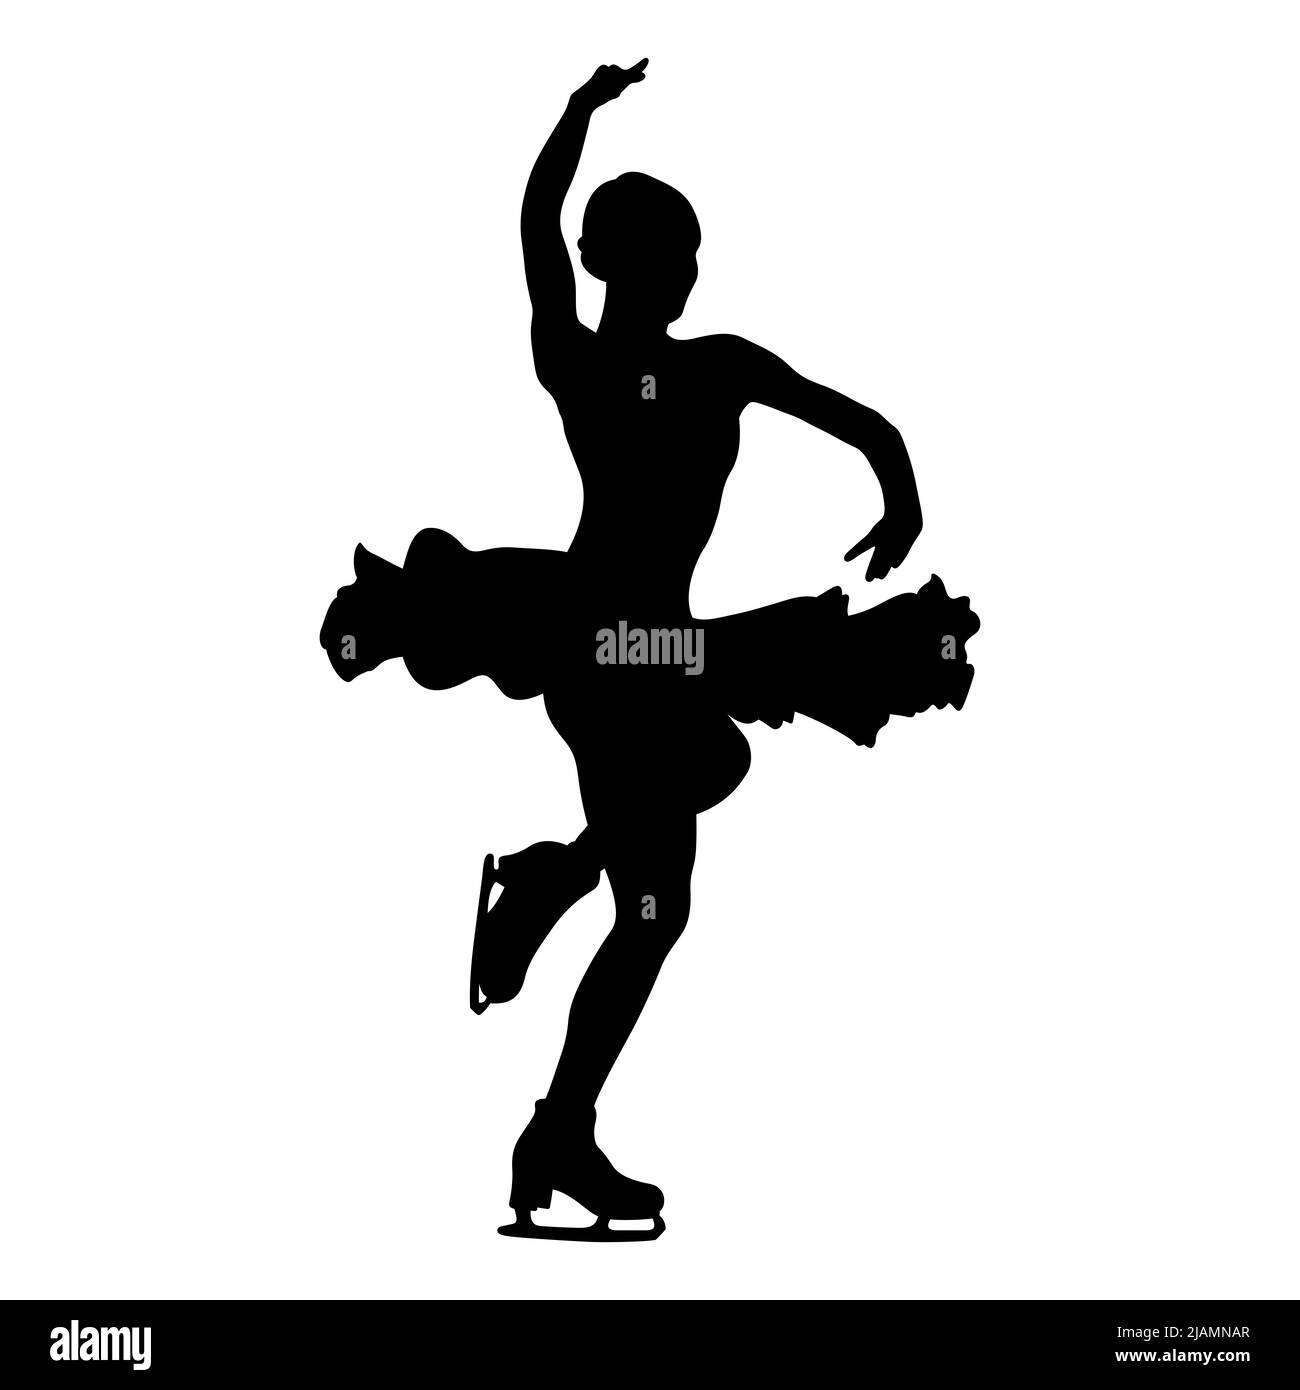 girl figure skater black silhouette Stock Photo